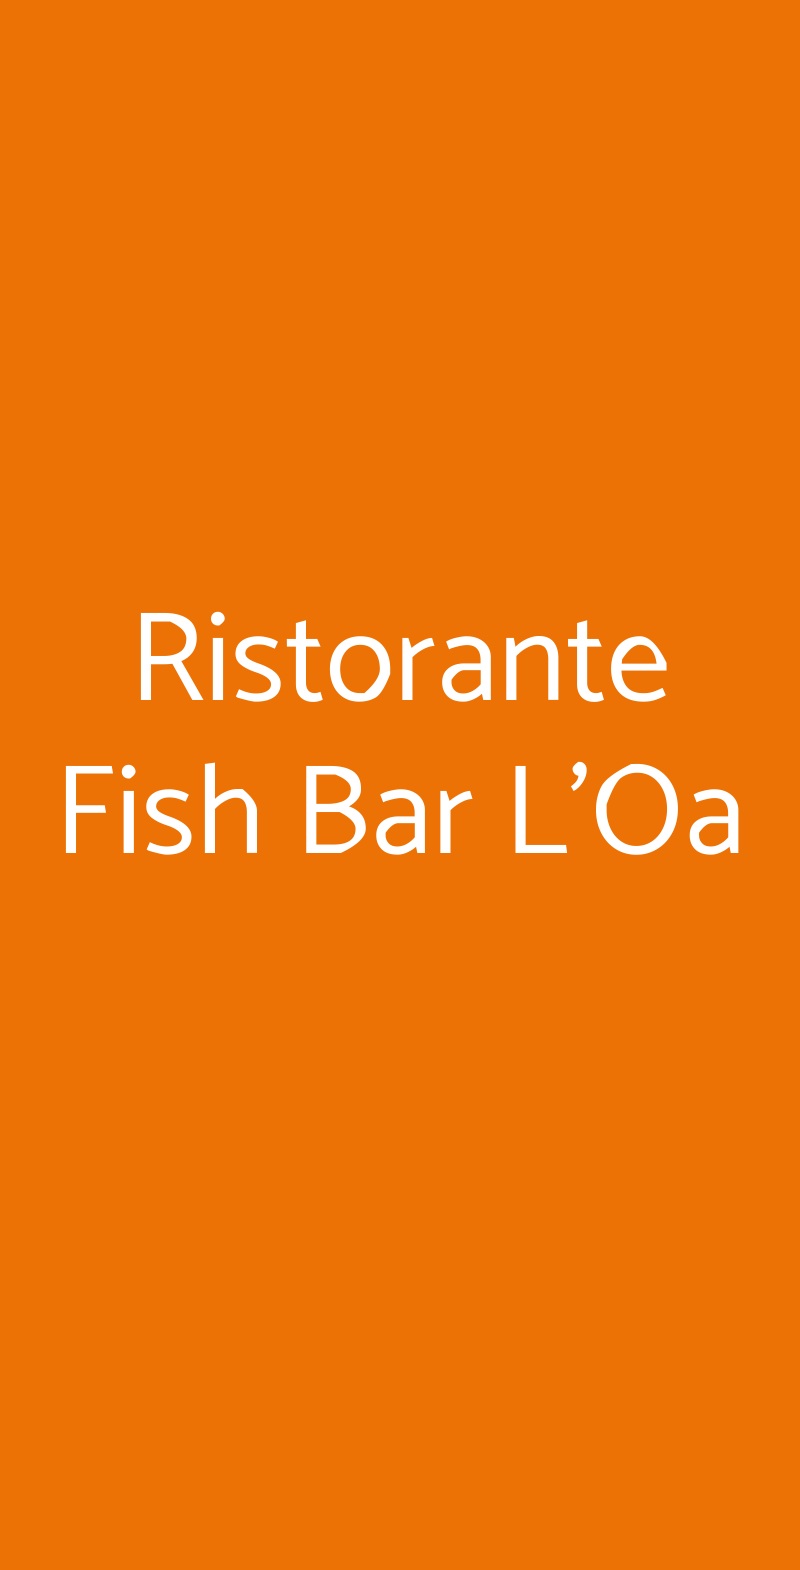 Ristorante Fish Bar L'Oa Arenzano menù 1 pagina